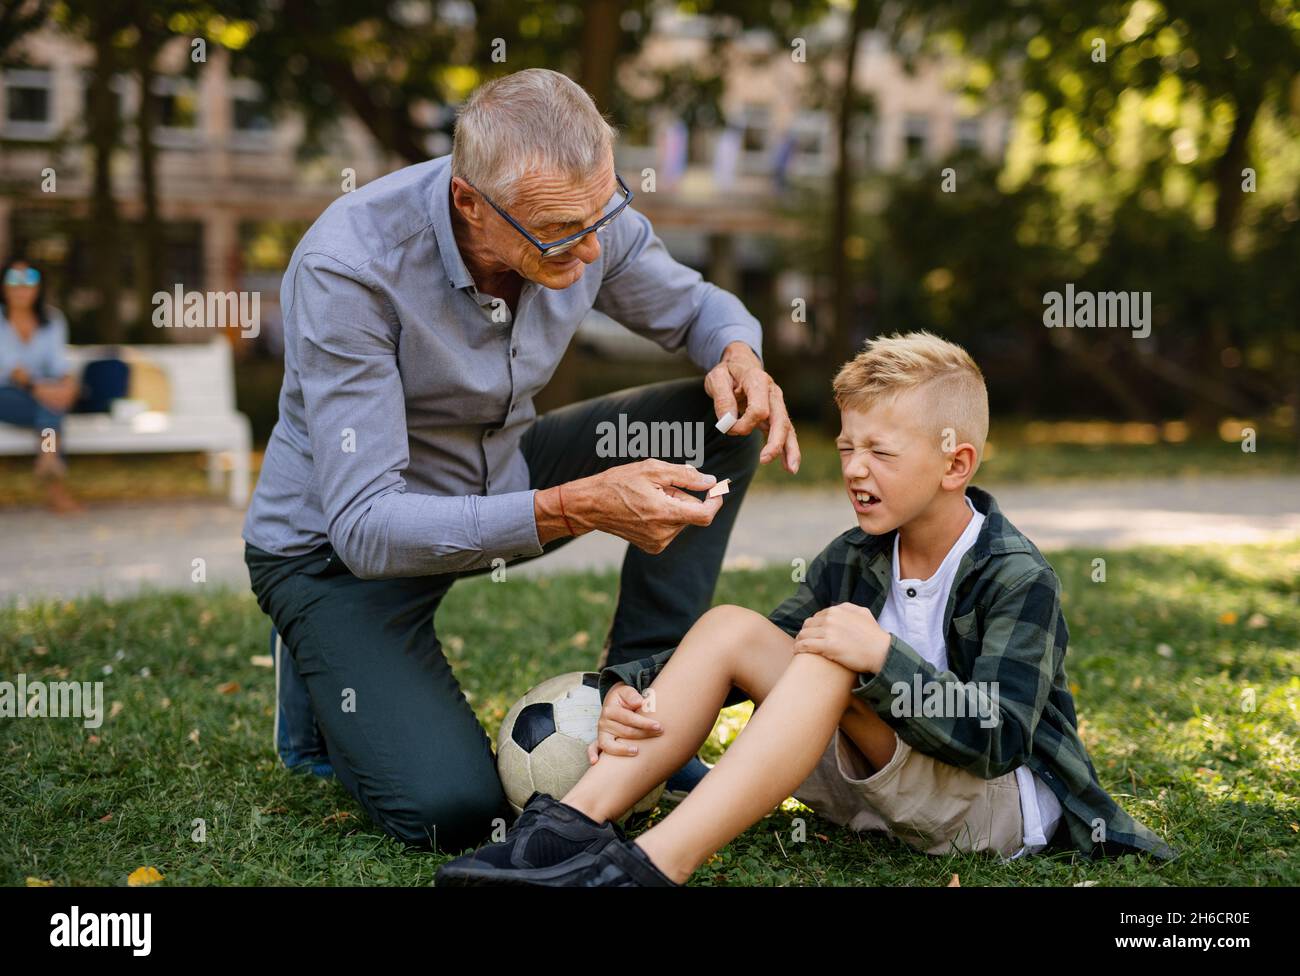 Petit garçon avec des pleurs de jambe blessés, son grand-père lui donne du plâtre à l'extérieur dans le parc. Banque D'Images